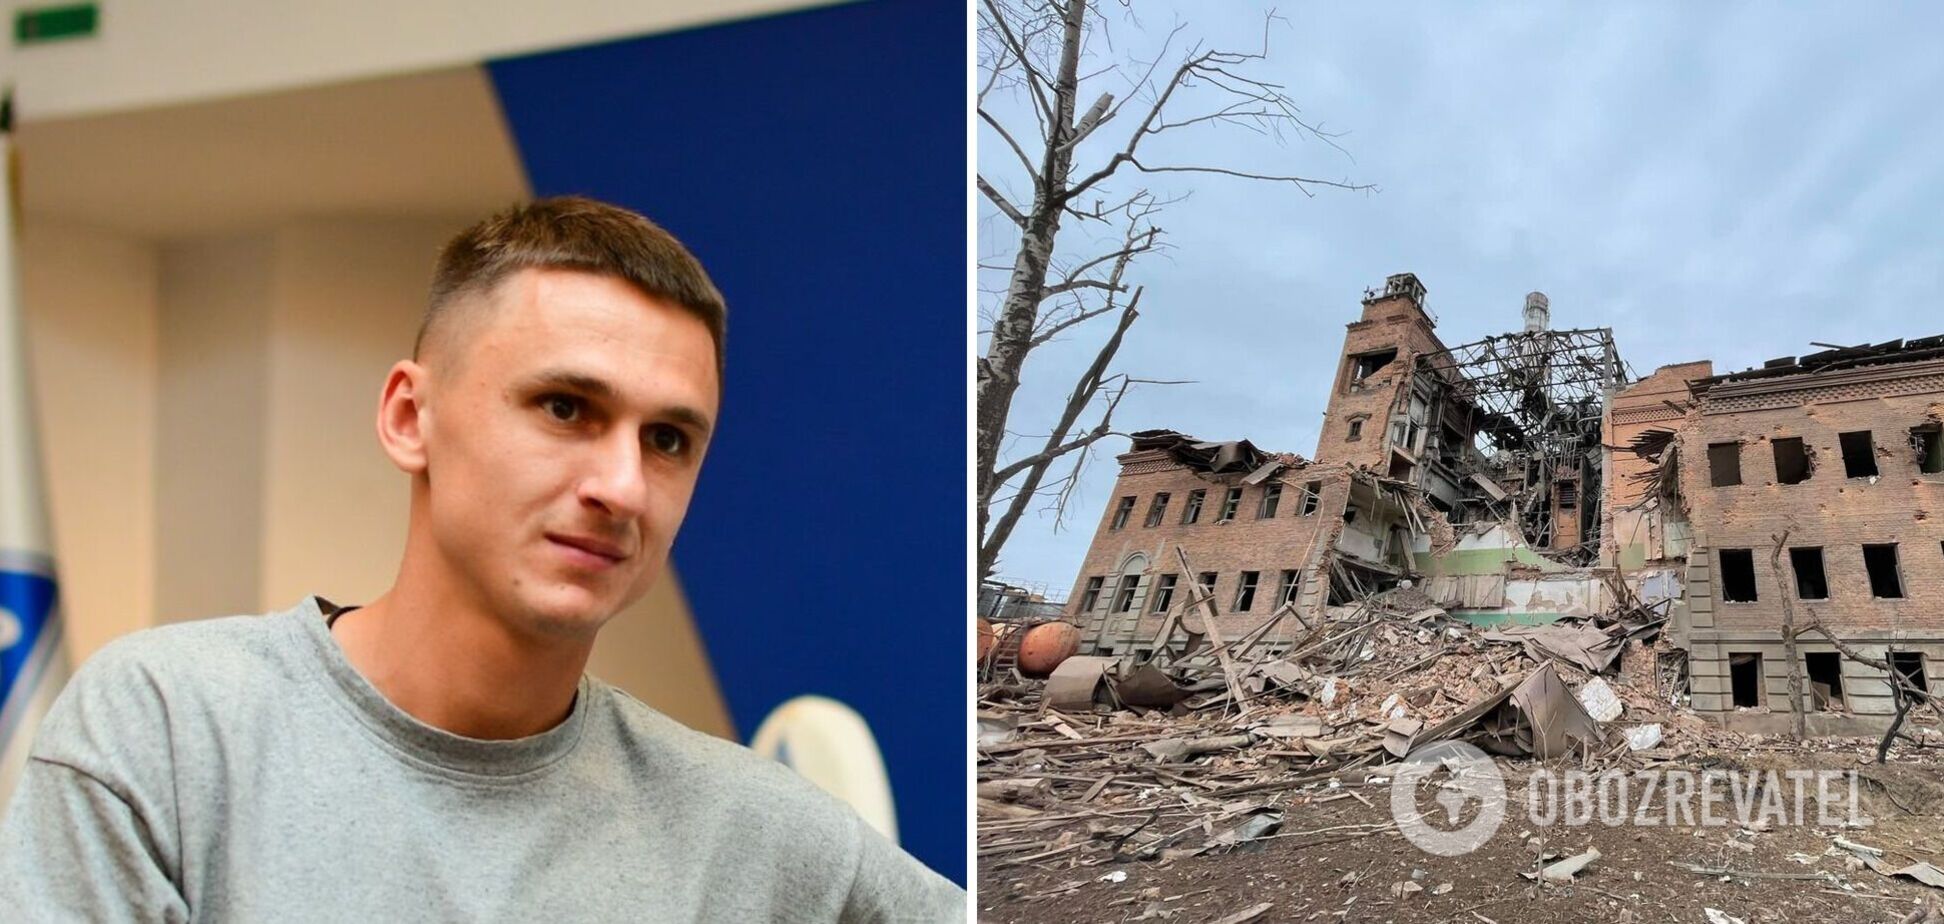 'Говорят. что это их дом': футболист 'Динамо' рассказал о своих родителях в разбомбленной Ахтырке